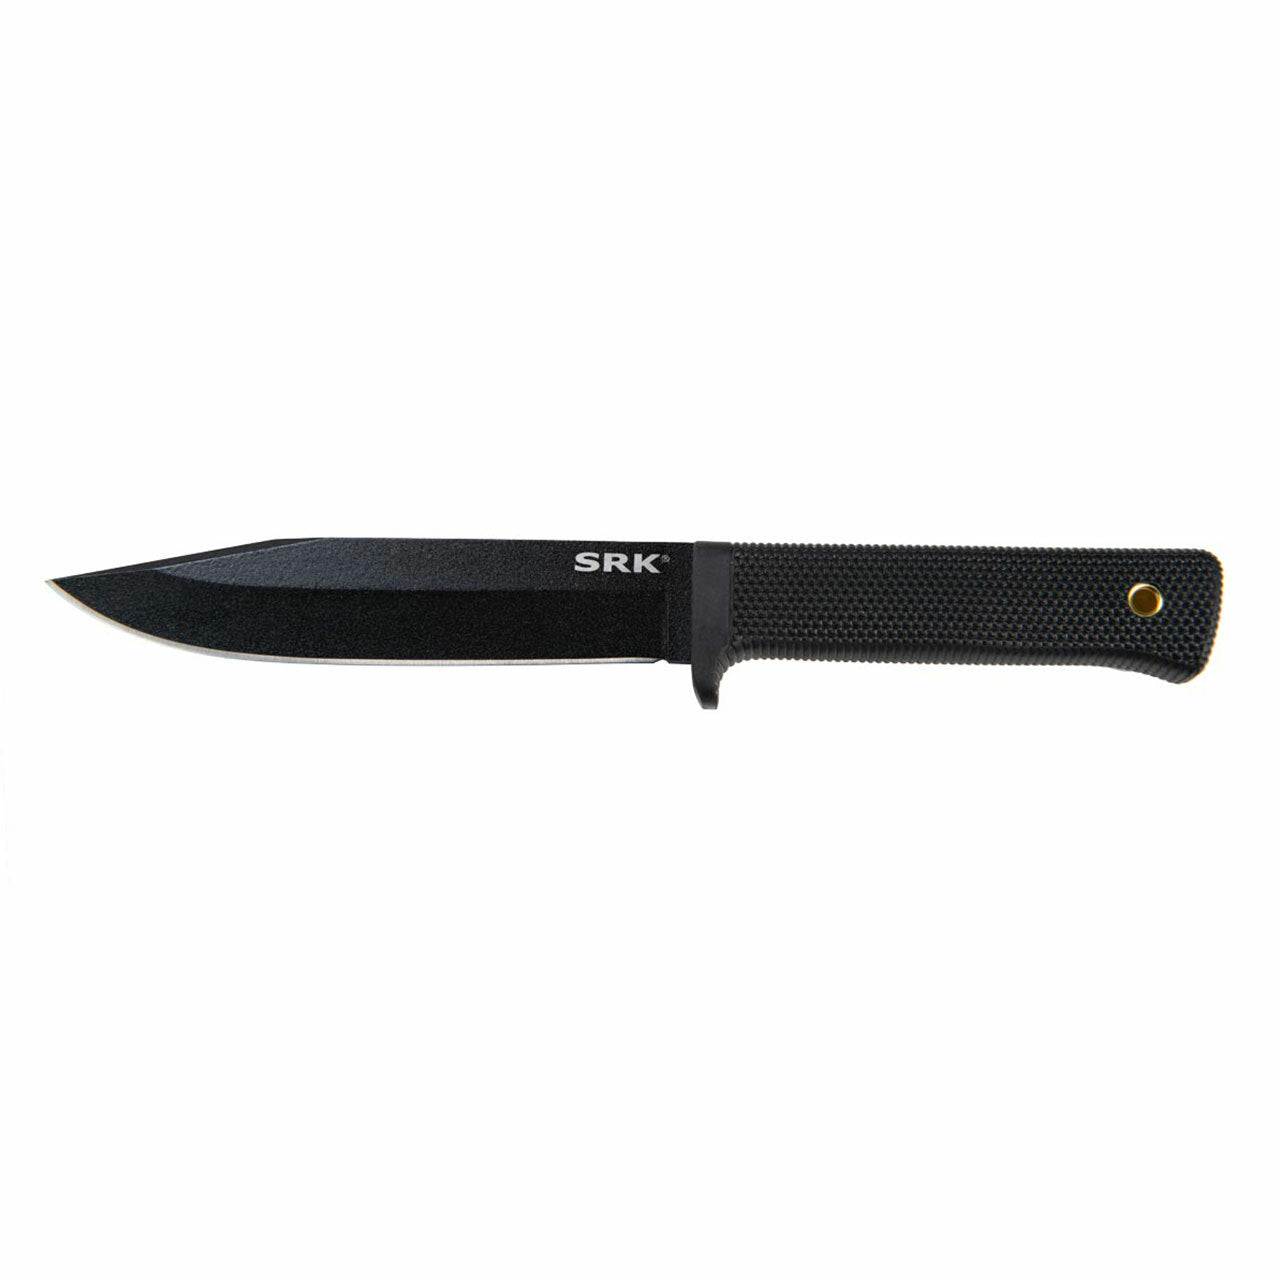 Cold Steel SRK Fixed Blade Survival Knife – SK5 Steel